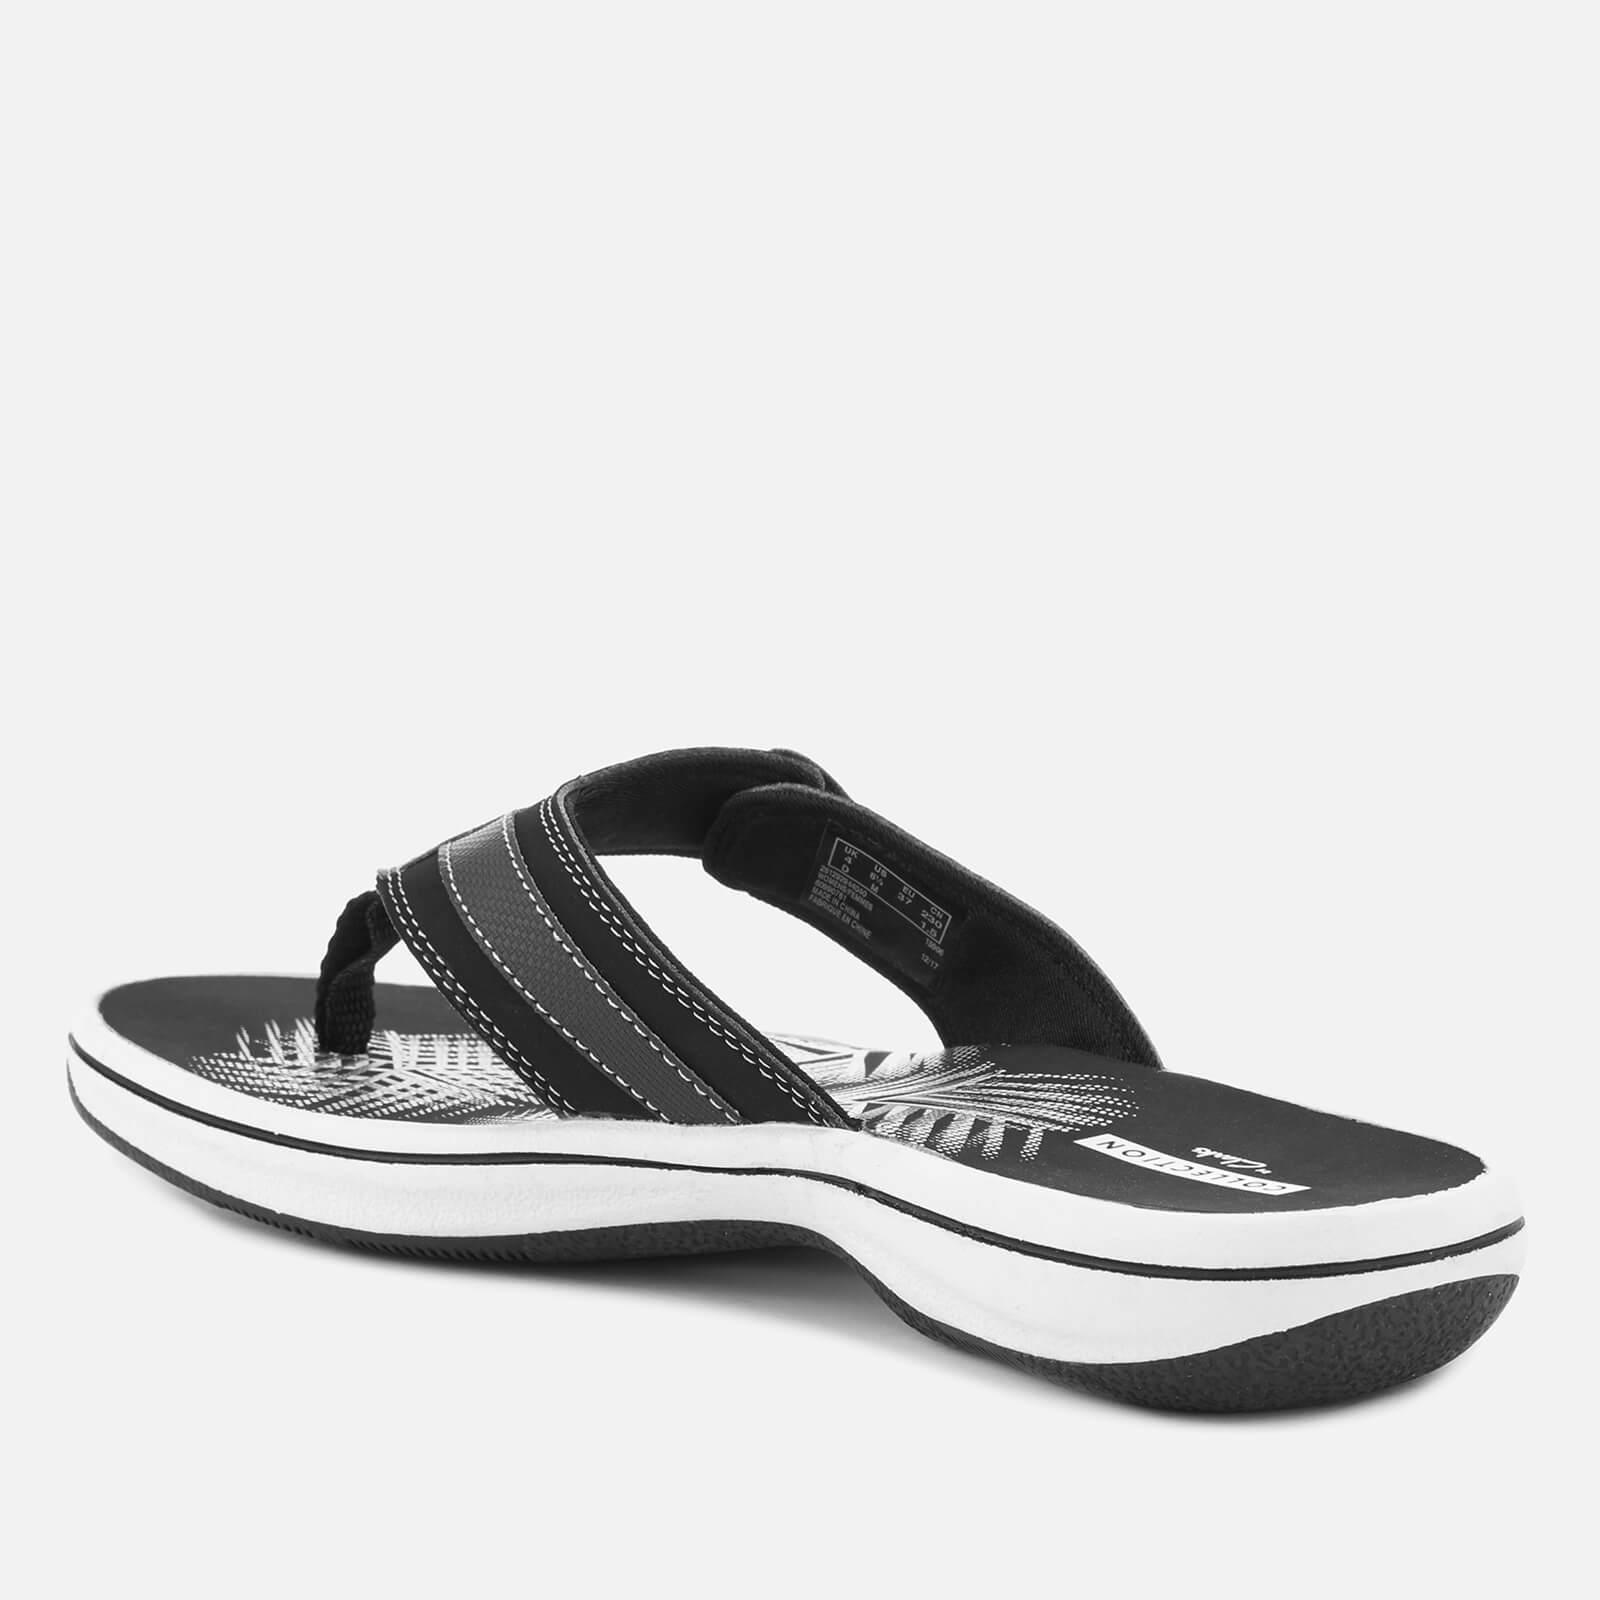 clarks sandals discount code